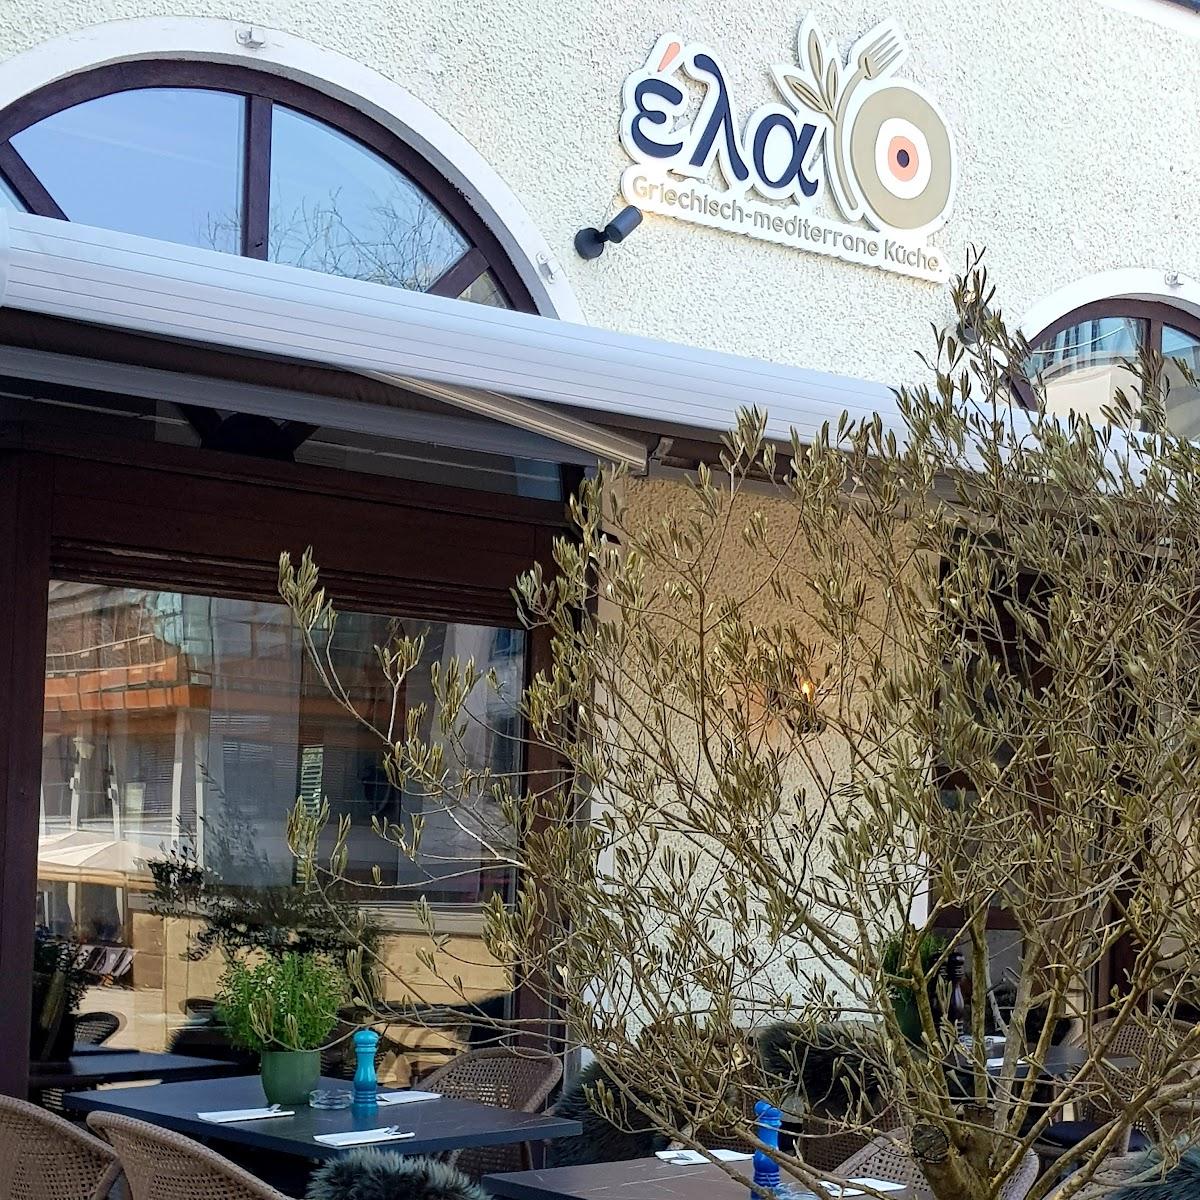 Restaurant "Ela - Griechisch-mediterrane Küche" in Starnberg